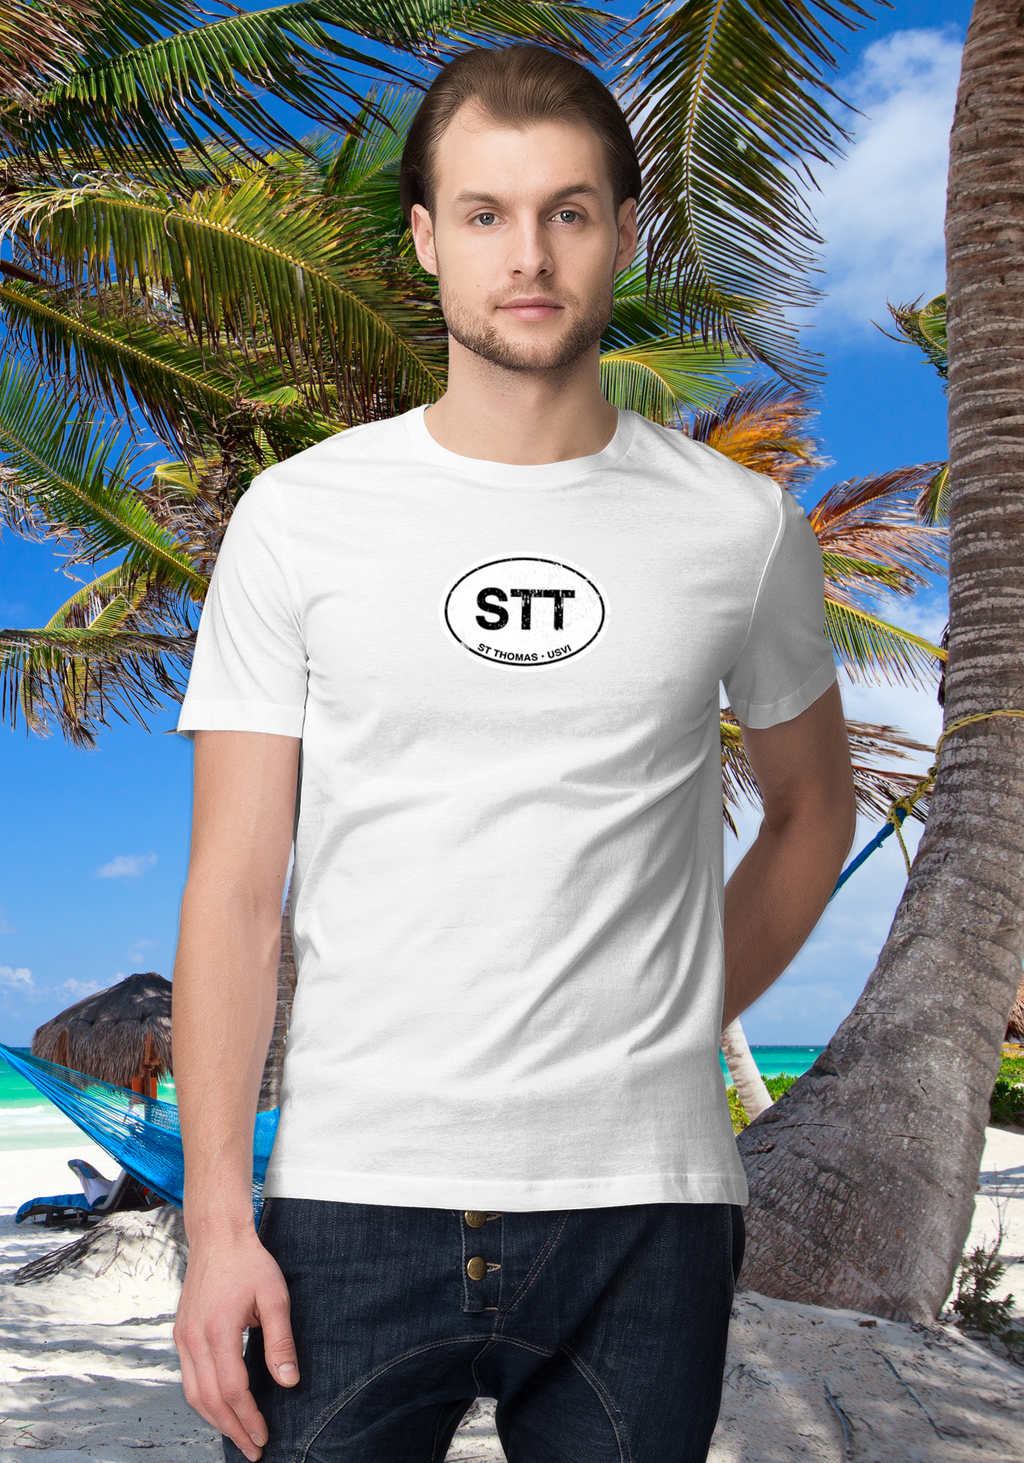 St Thomas Men's Classic T-Shirt Souvenirs - My Destination Location